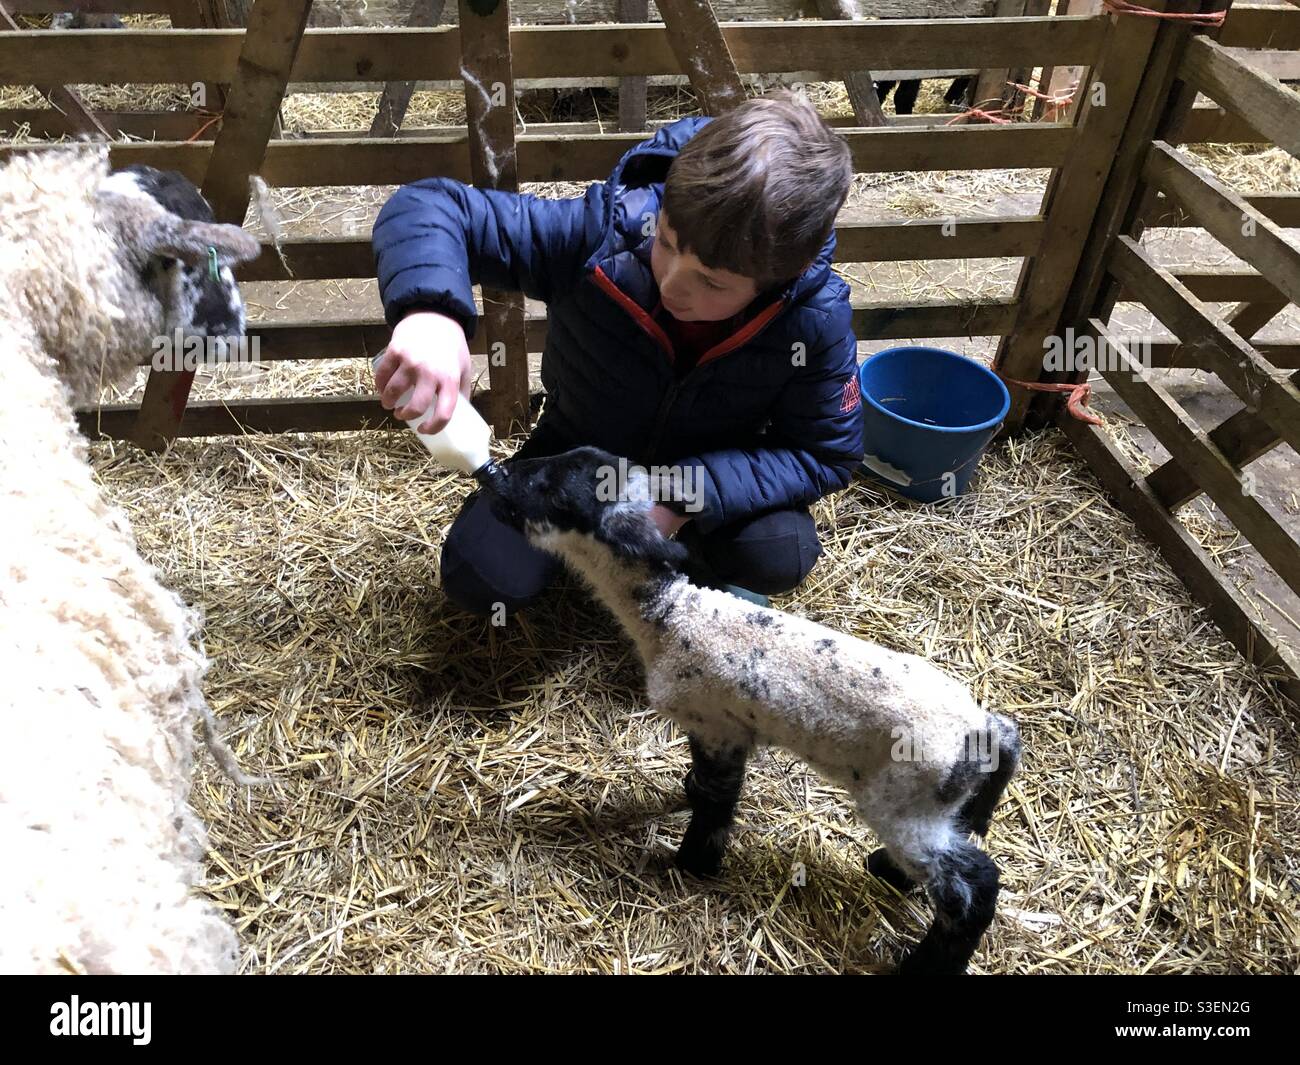 Garçon de huit ans qui nourrit un agneau avec une bouteille de lait dans une ferme, au Royaume-Uni Banque D'Images